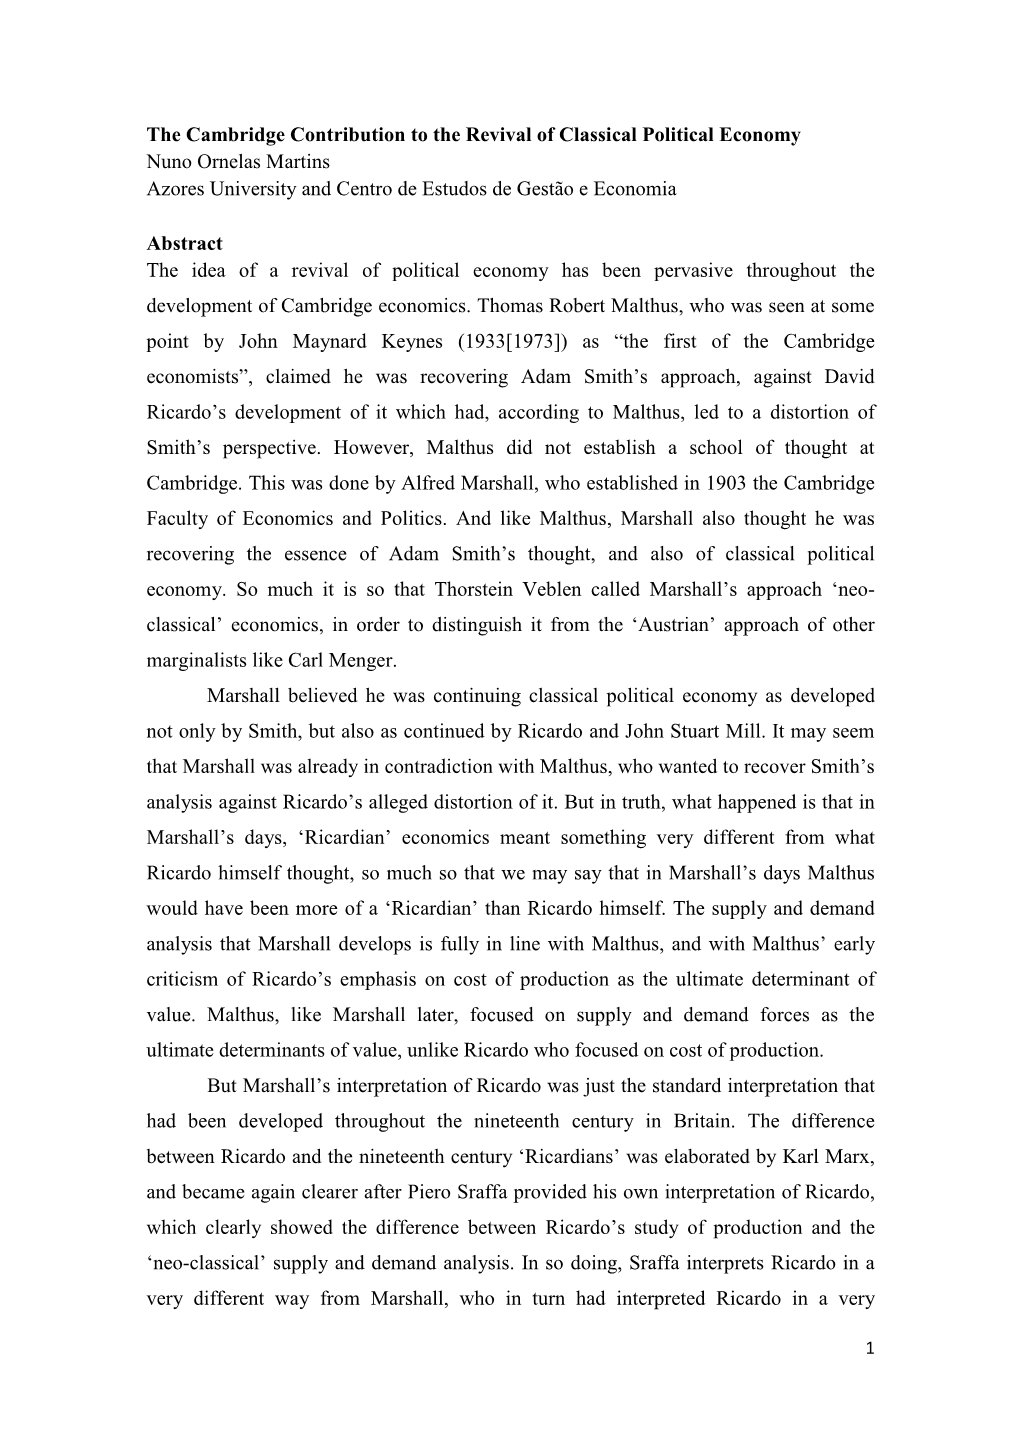 The Cambridge Contribution to the Revival of Classical Political Economy Nuno Ornelas Martins Azores University and Centro De Estudos De Gestão E Economia